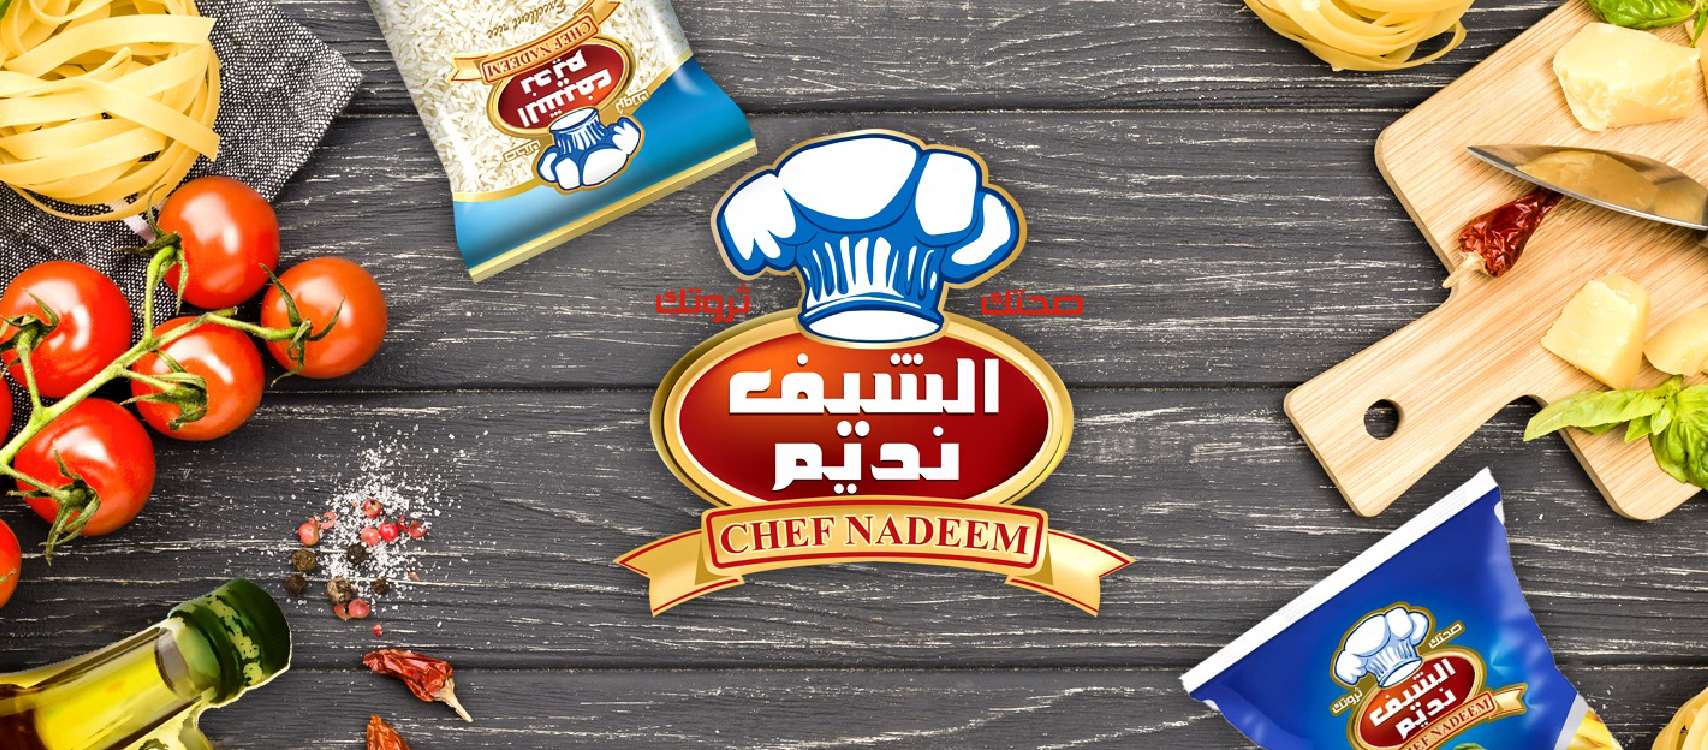 Chef Nadeem - الشيف نديم